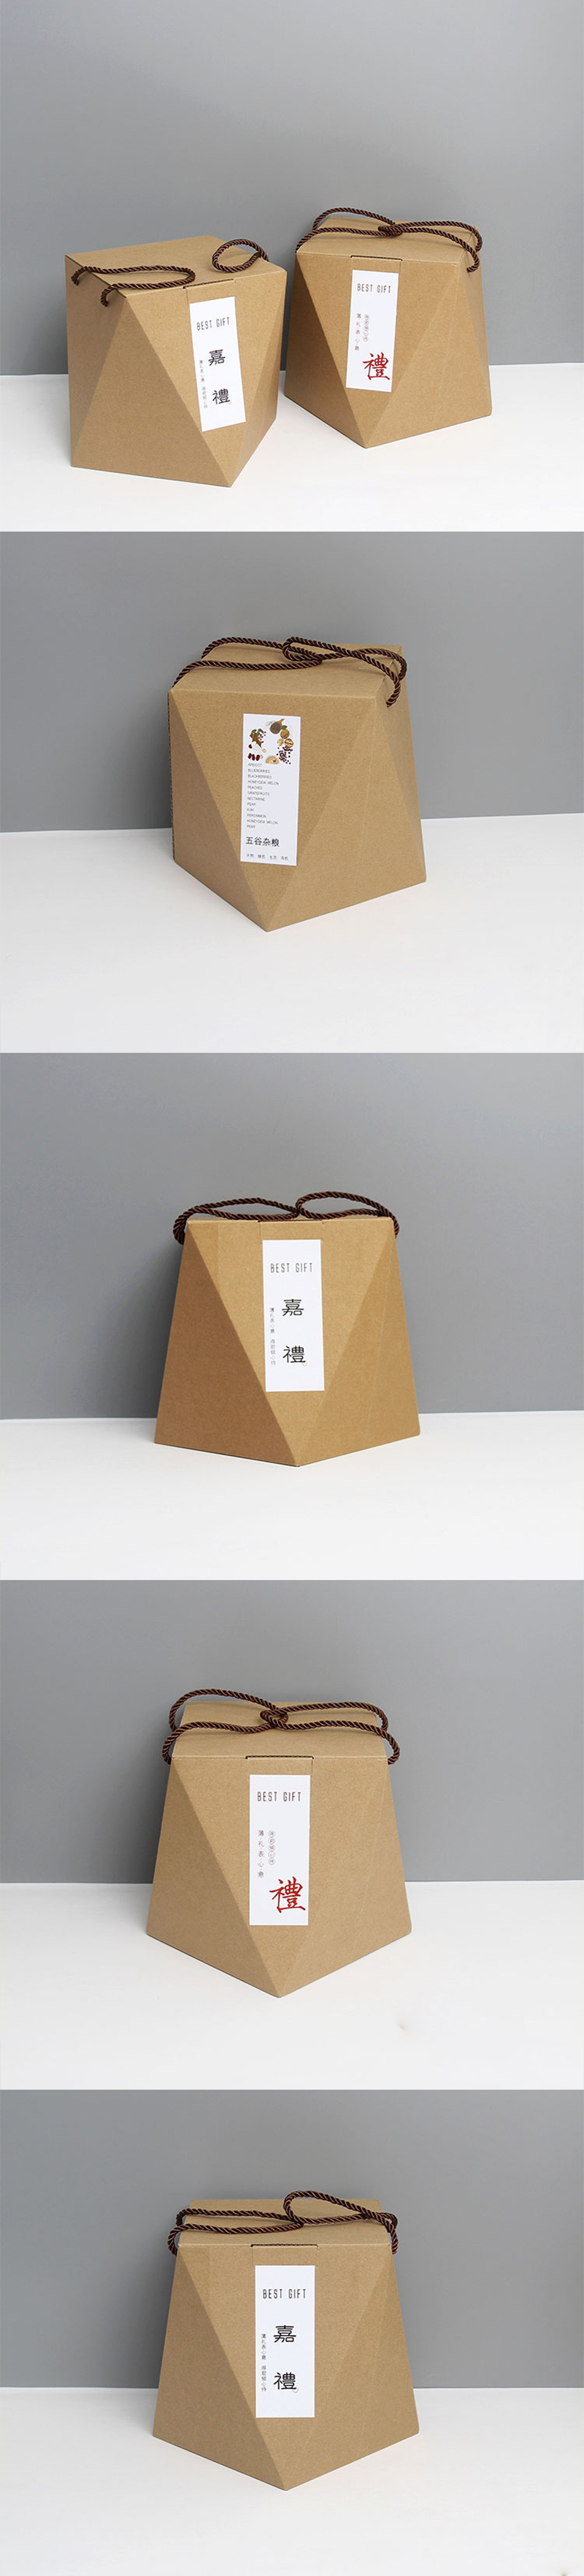 粽子礼盒异形盒包装设计